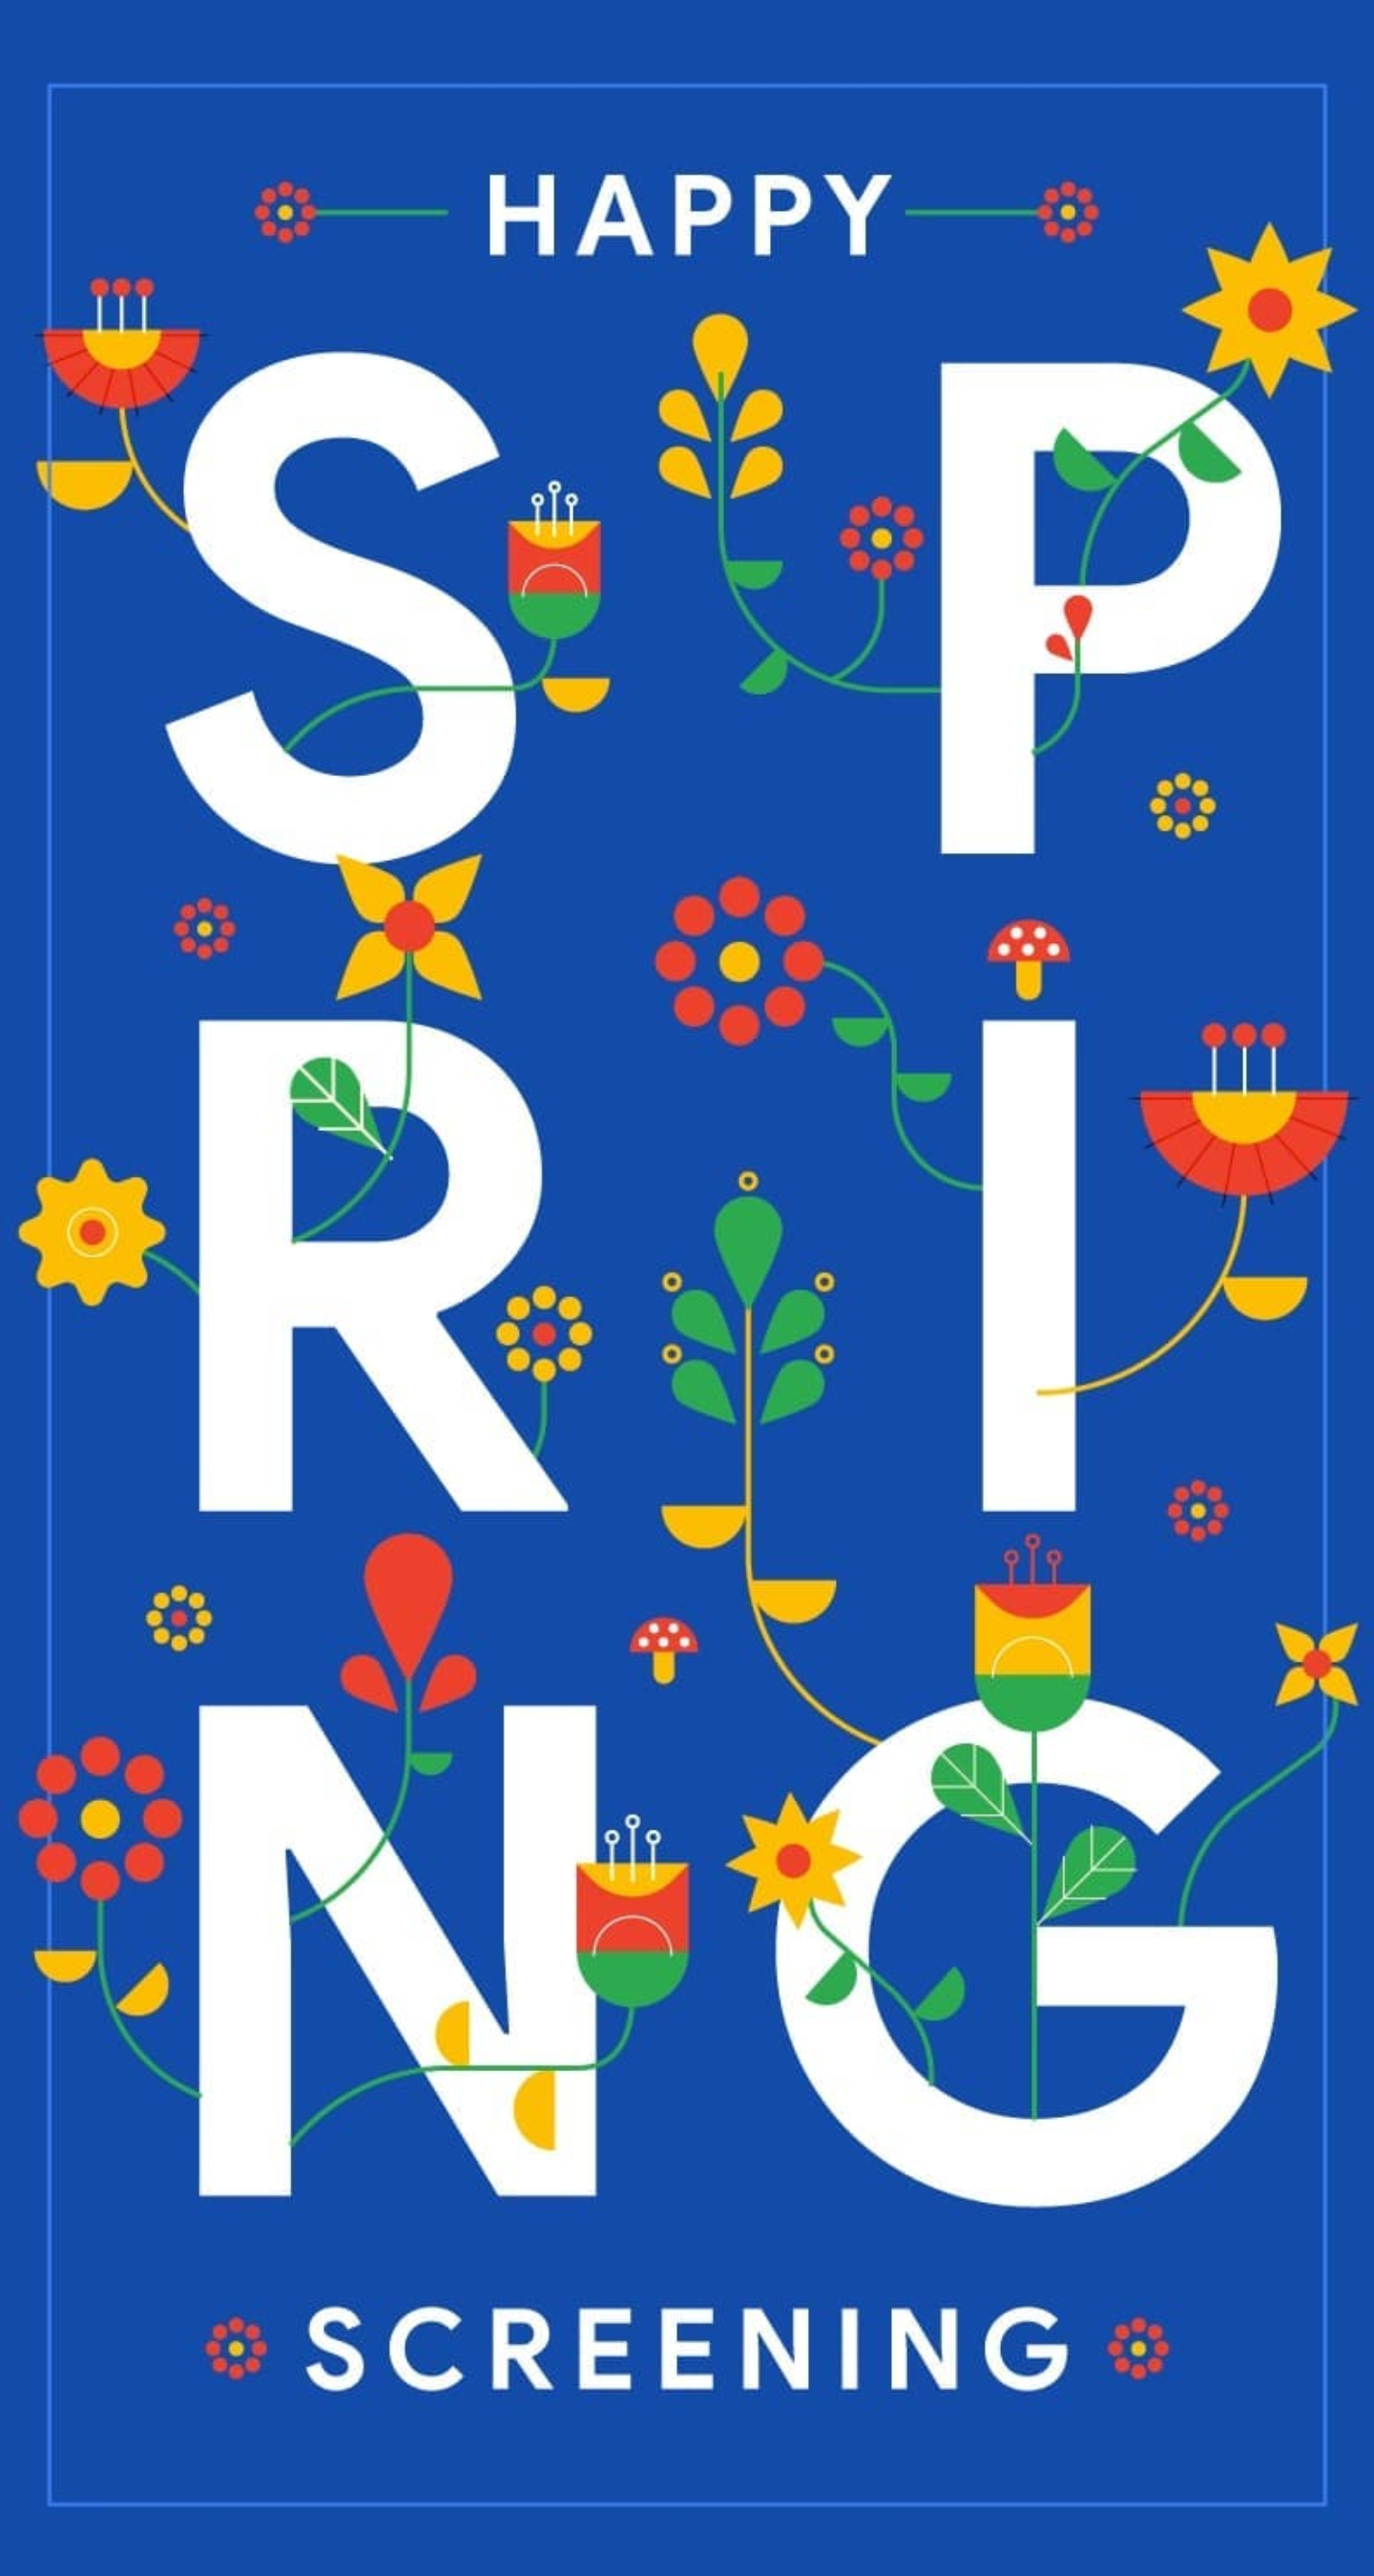 Chia sẻ bộ ảnh nền chủ đề Google Spring 2018 dành
cho smartphone, mời anh em tải về!